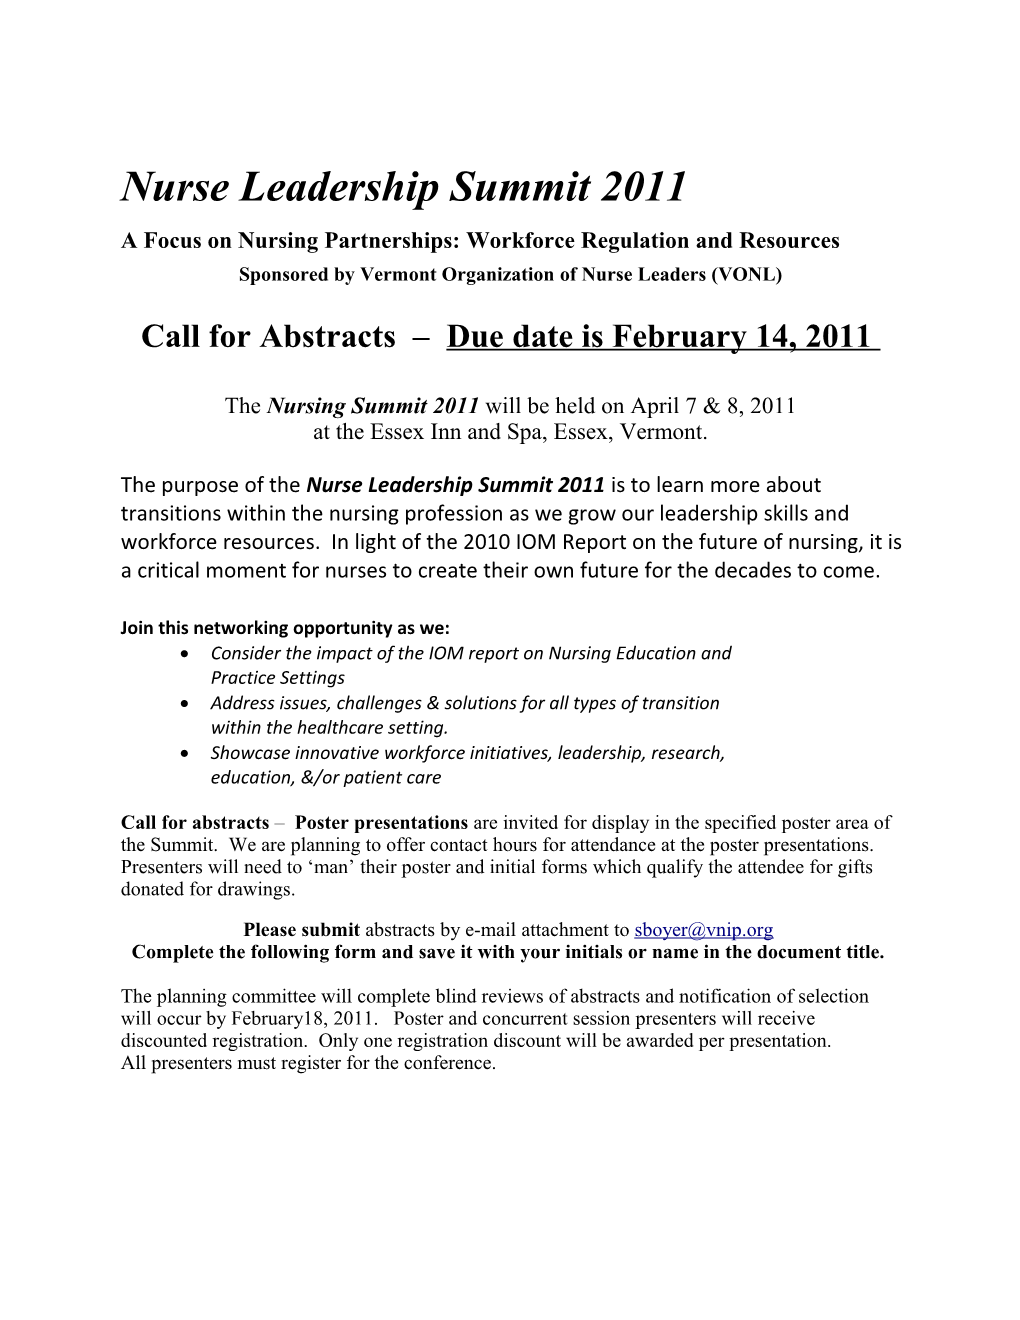 Vermont Nursing Summit 2007